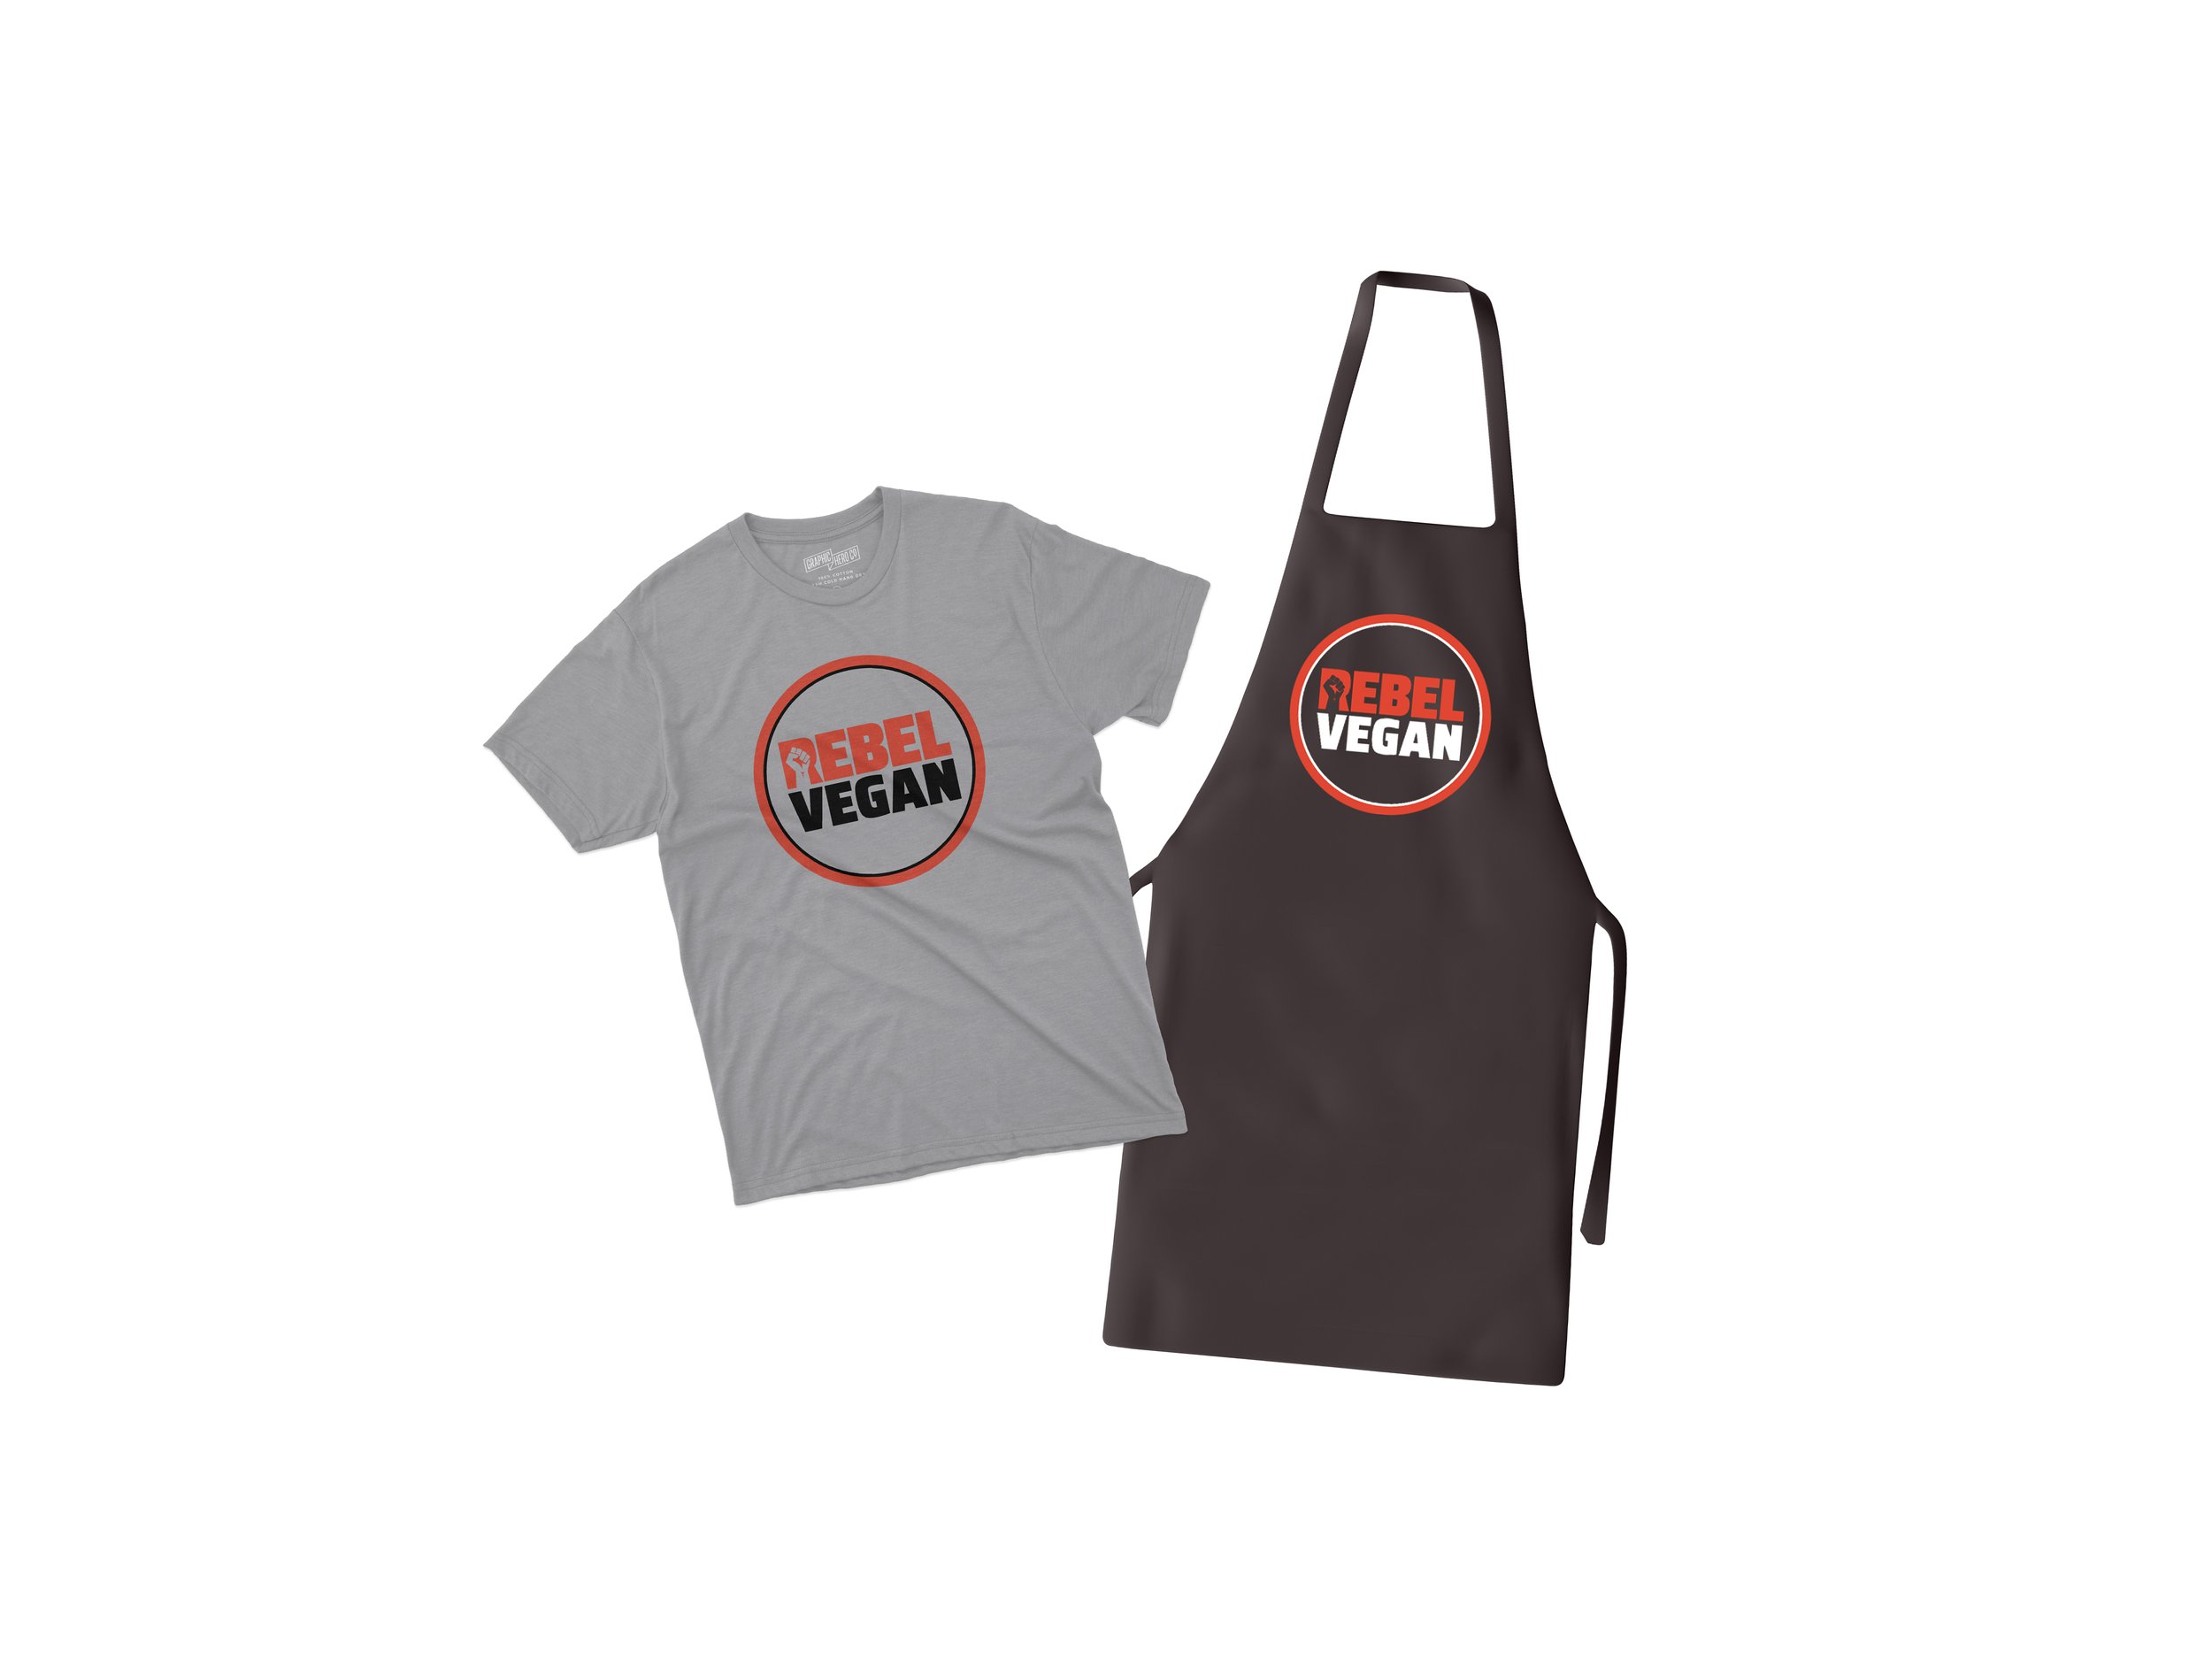 Rebel Vegan Life t-shirt and apron